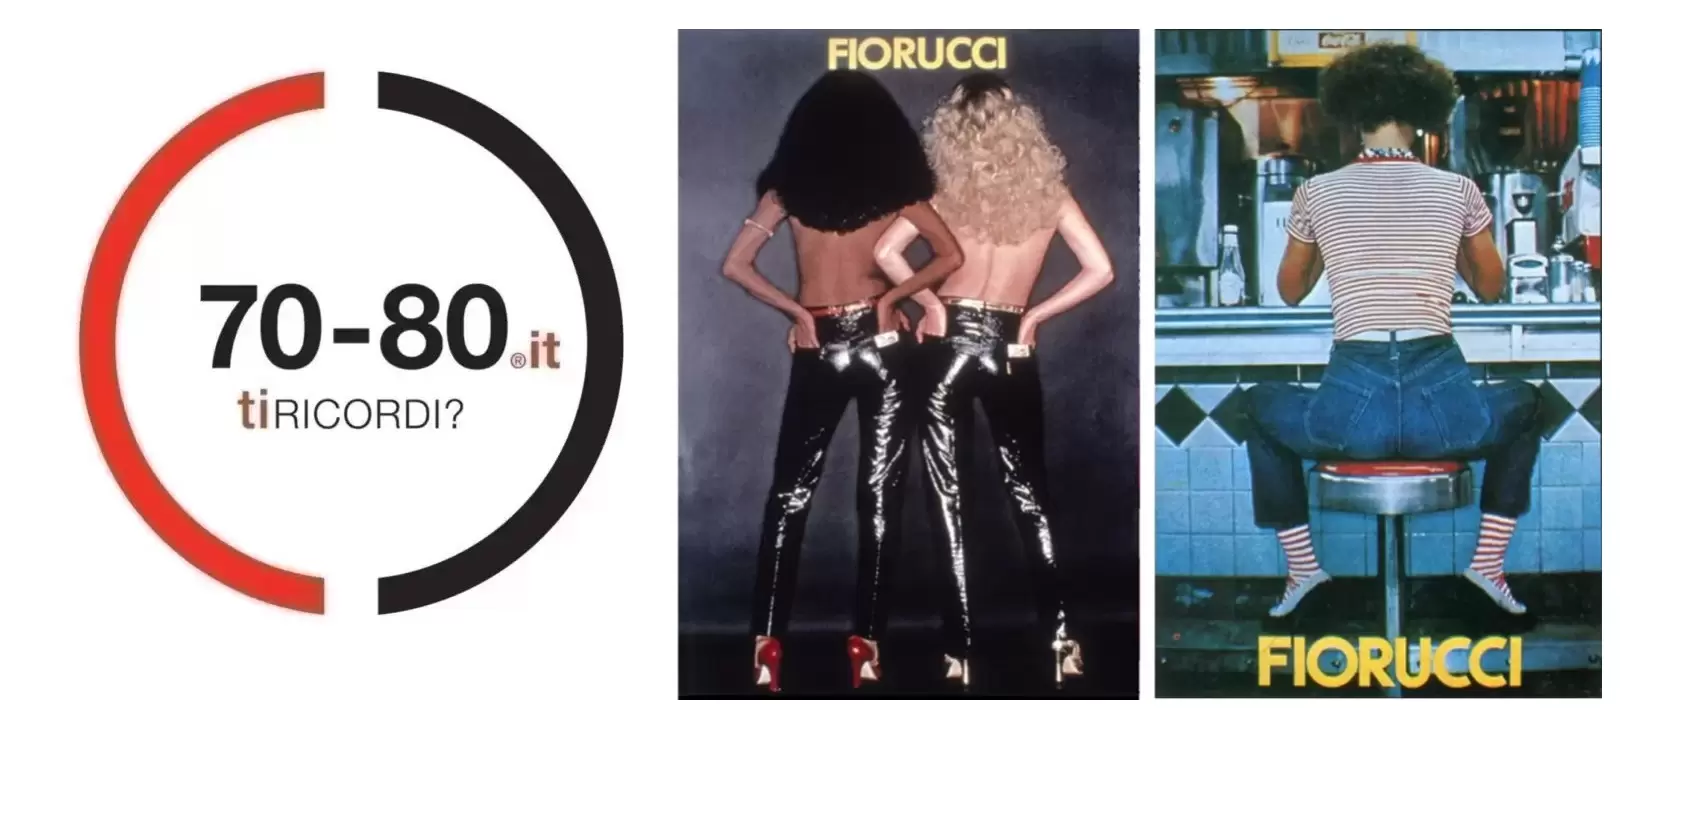 1967. Fiorucci libera la moda, che diventa pop, come gli angioletti del suo  logo che hanno un buon motivo per puntare gli occhi al cielo 